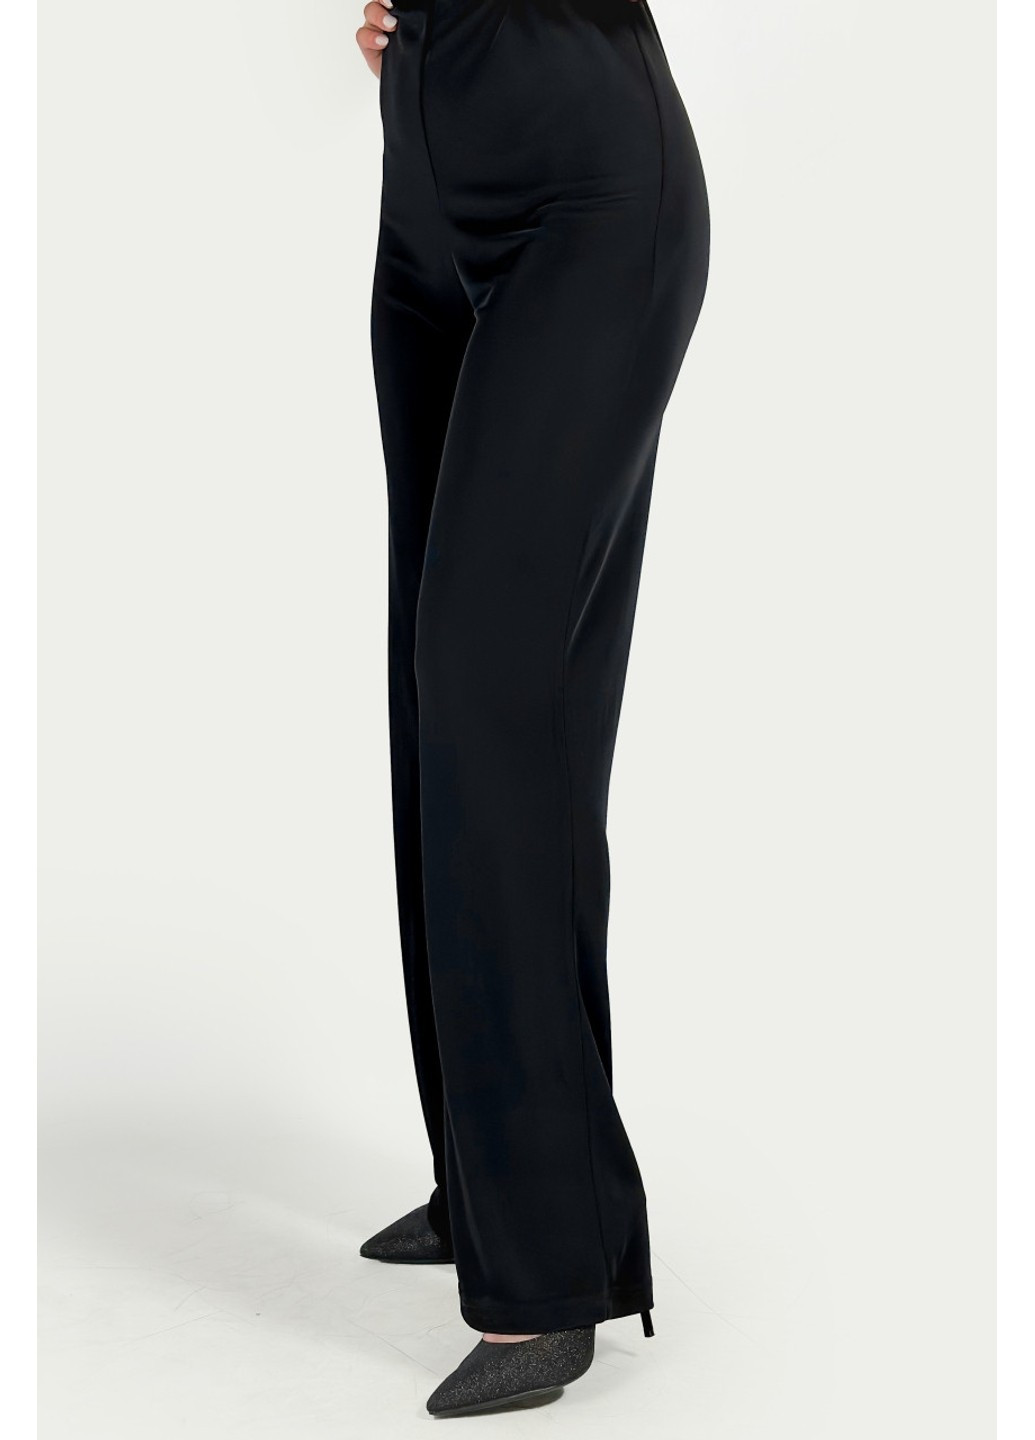 Комбинезон 2972/202/800 Zara комбинезон-брюки однотонный чёрный вечерний